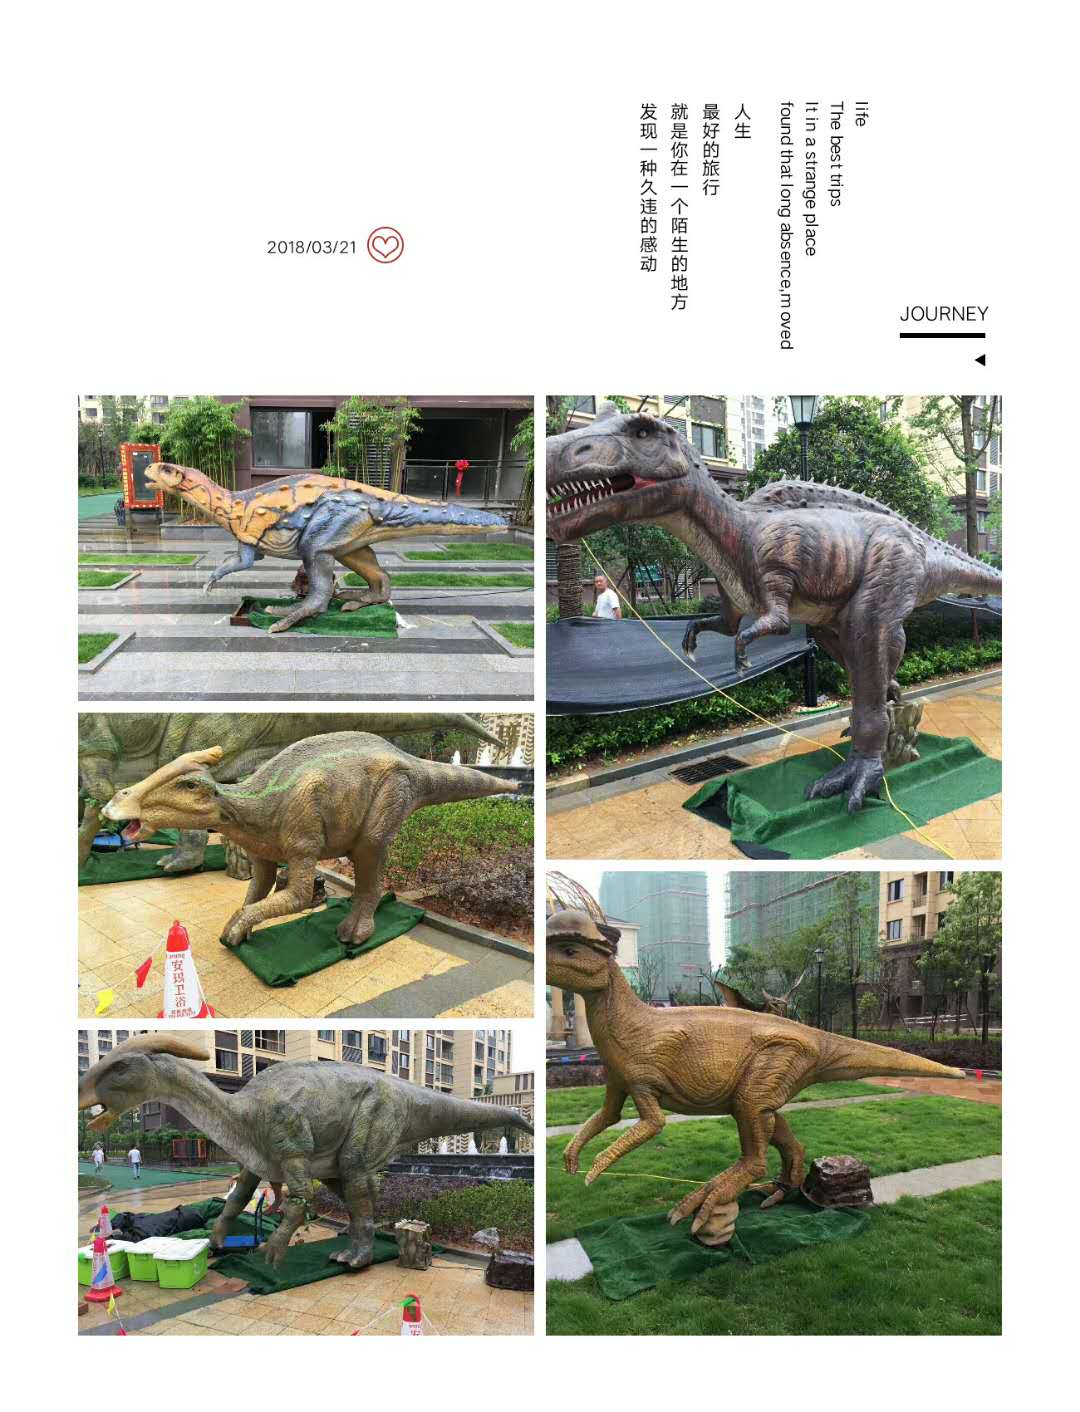 十一展品模型仿真恐龙展出租 打造侏罗纪公园主题展